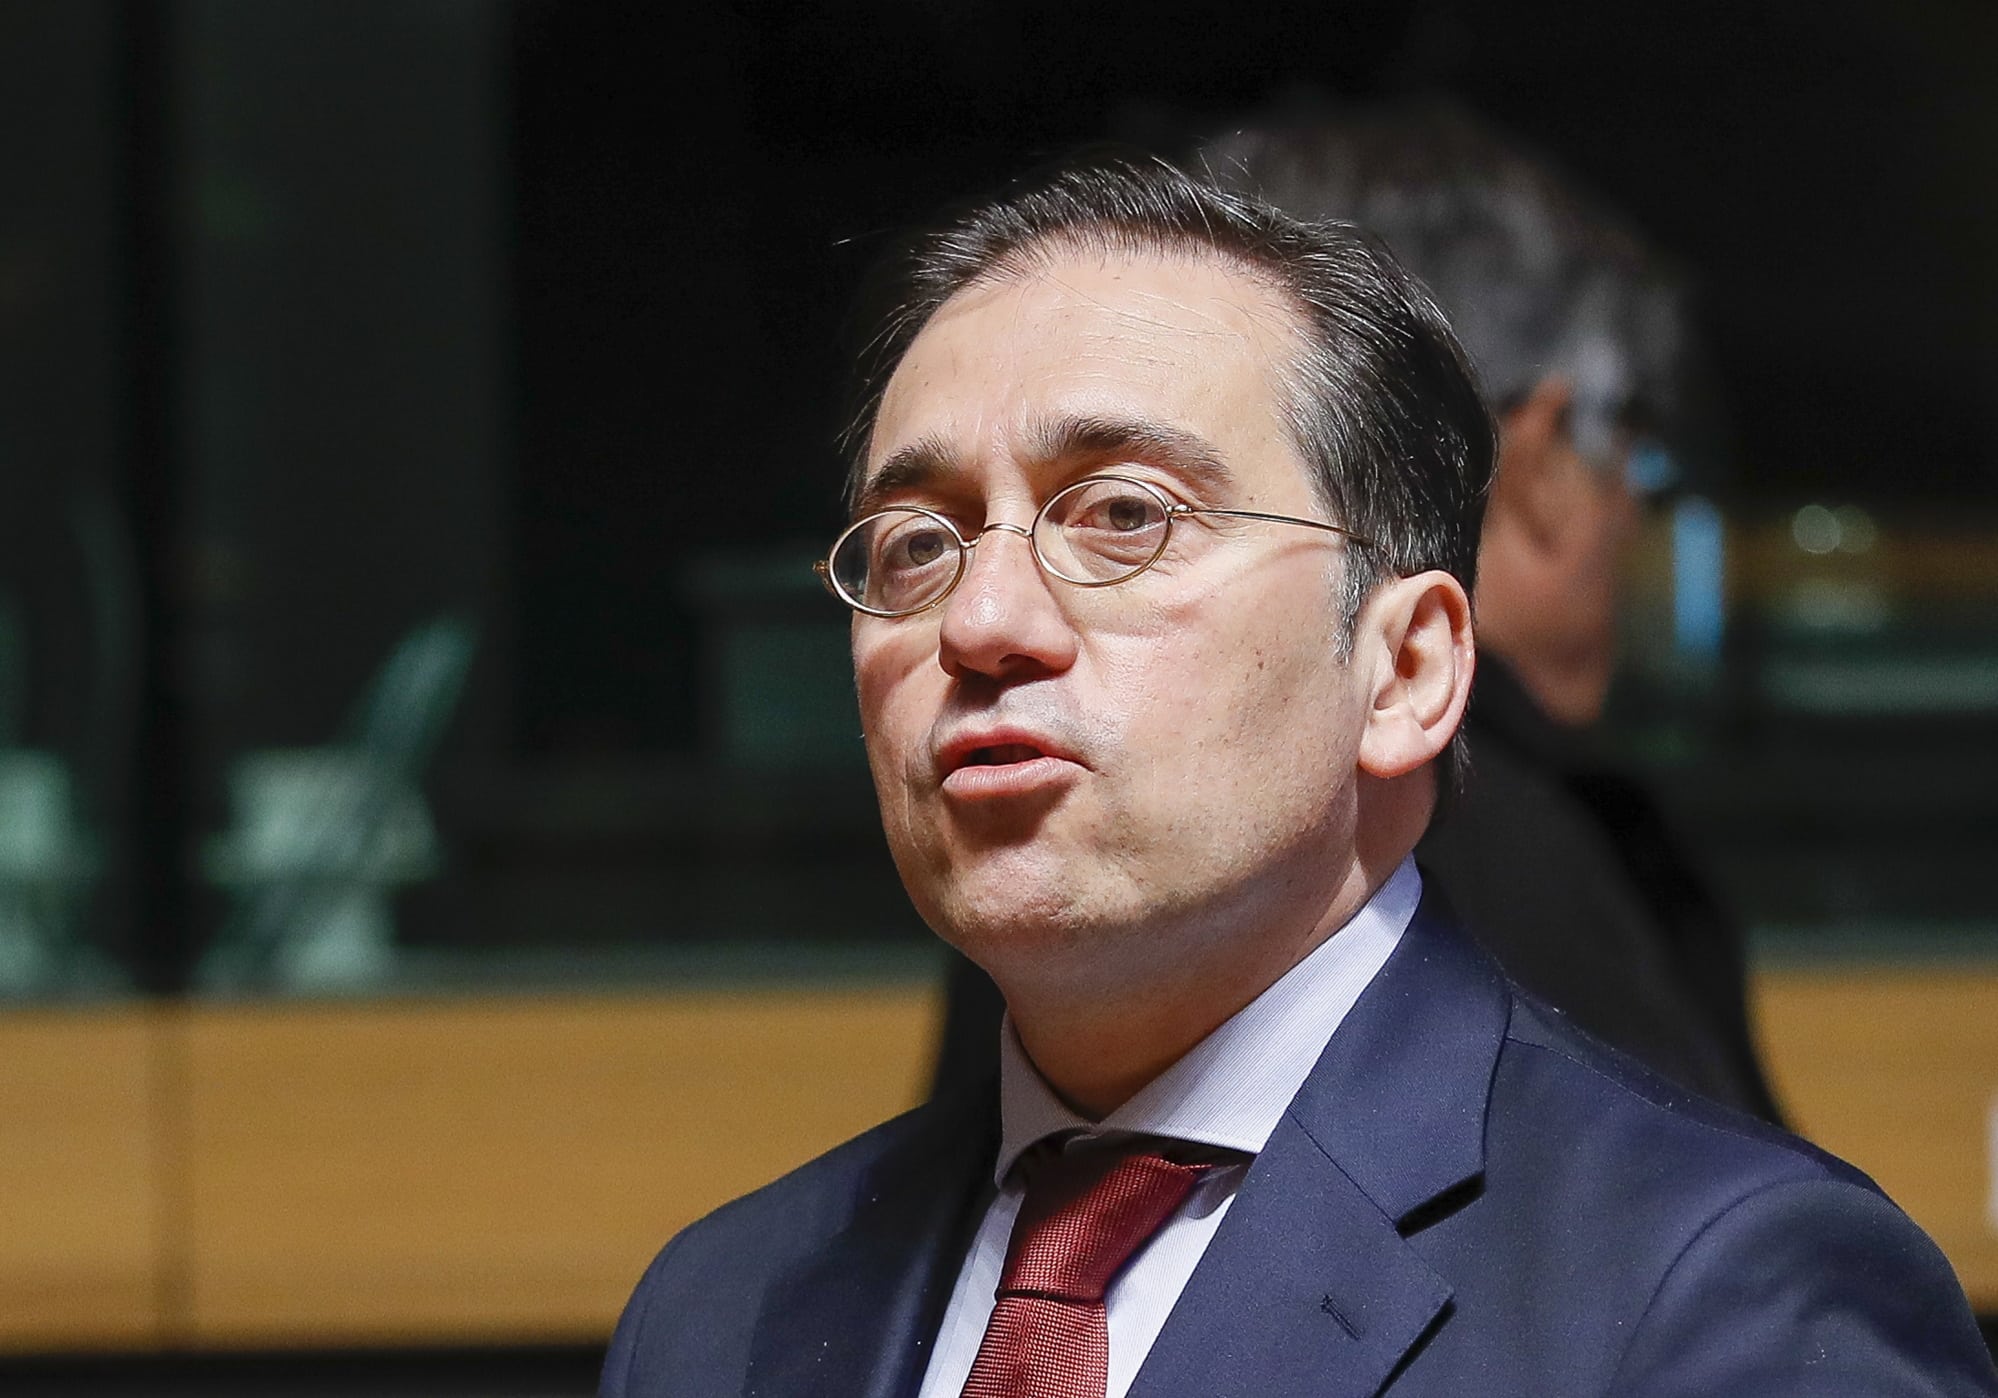 El ministro español de Asuntos Exteriores, José Manuel Albares, al inicio del consejo de Asuntos Exteriores en Luxemburgo